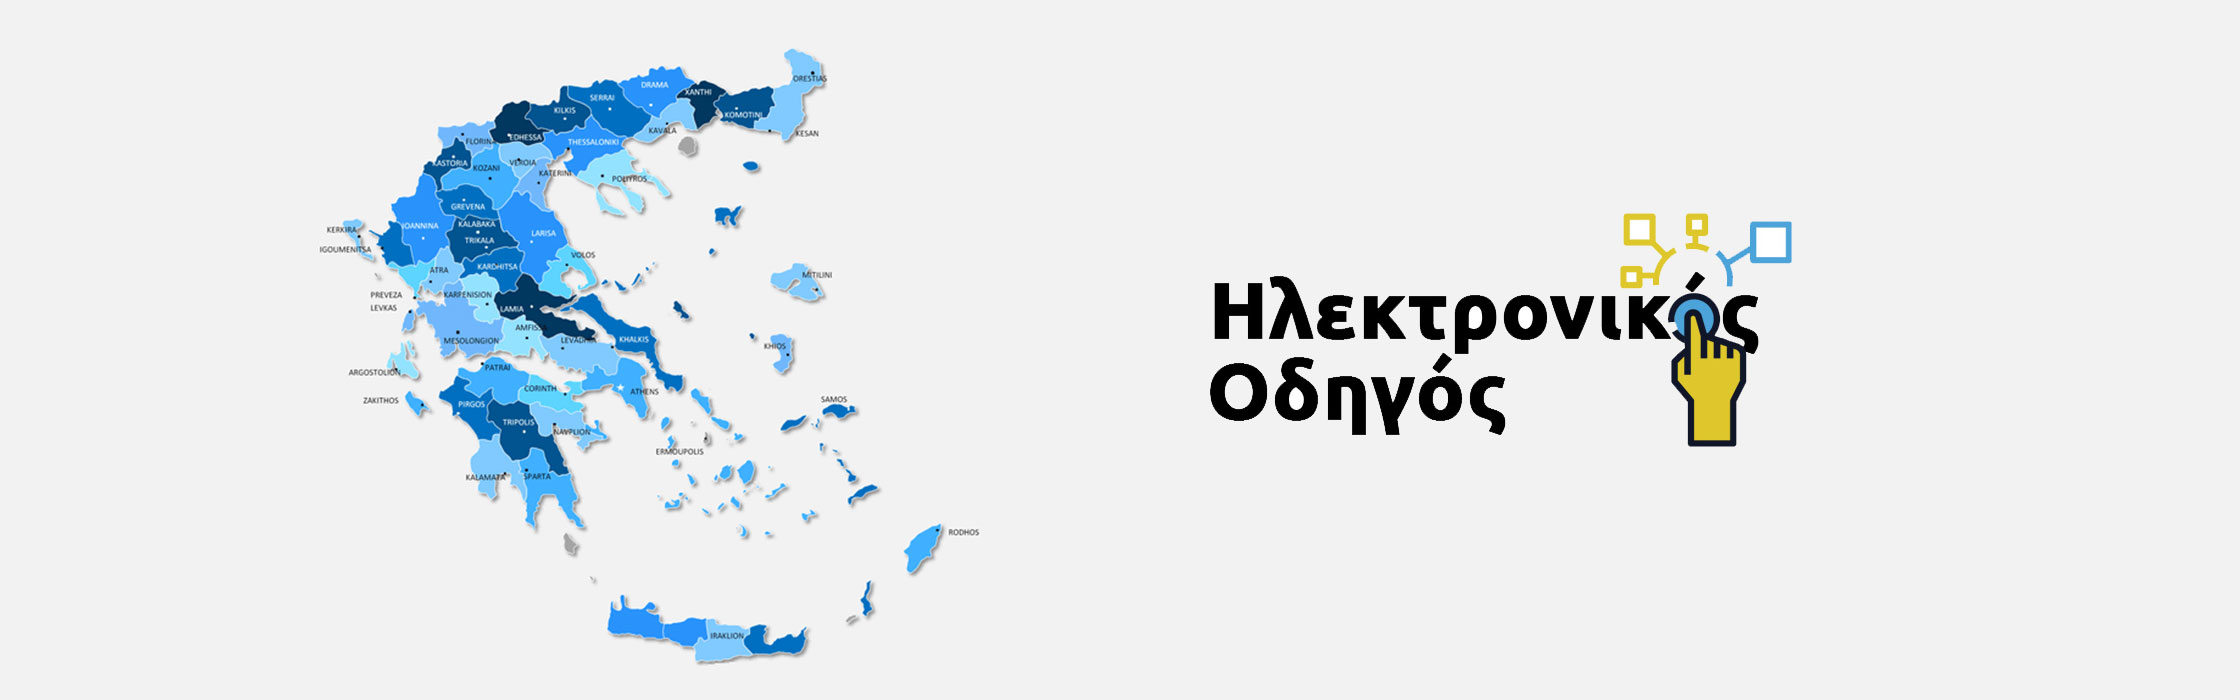 Ηλεκτρονικός Οδηγός Επαγγελματιών, ηλεκτρονικός οδηγός Ελλάδος, ηλεκτρονικός οδηγός επιχειρήσεων, επαγγελματικός ηλεκτρονικός οδηγός 